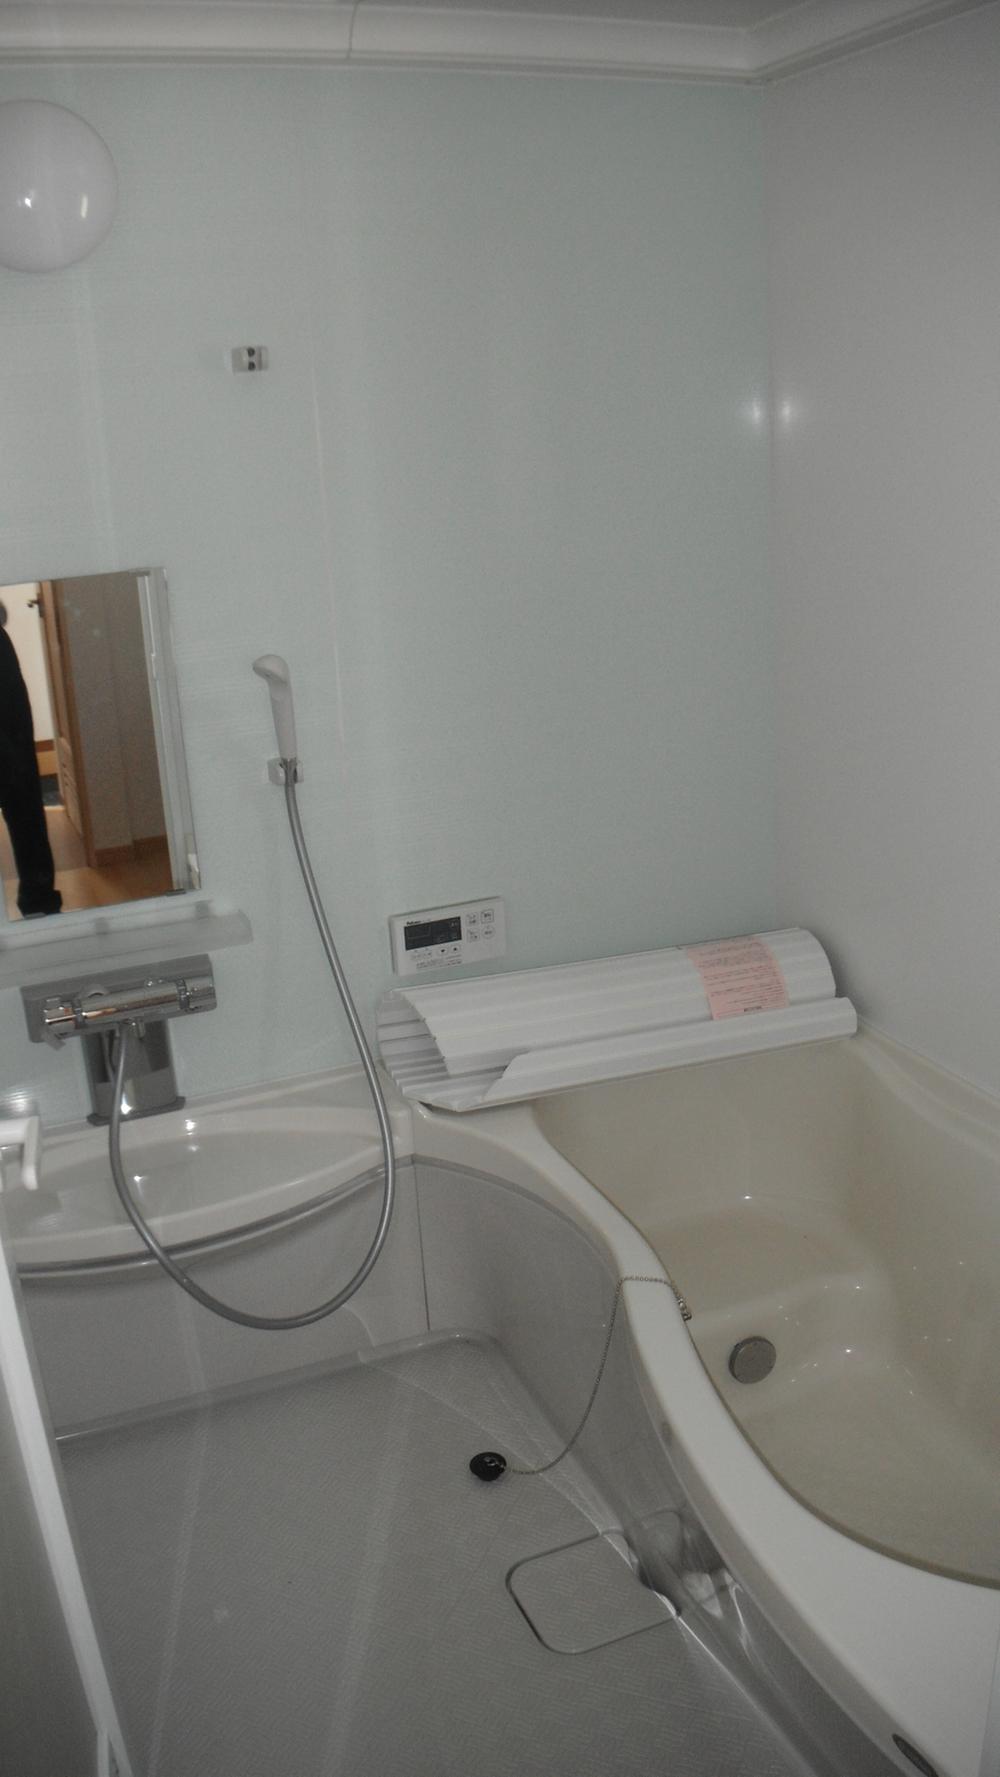 Bathroom. Room (May 2012) shooting